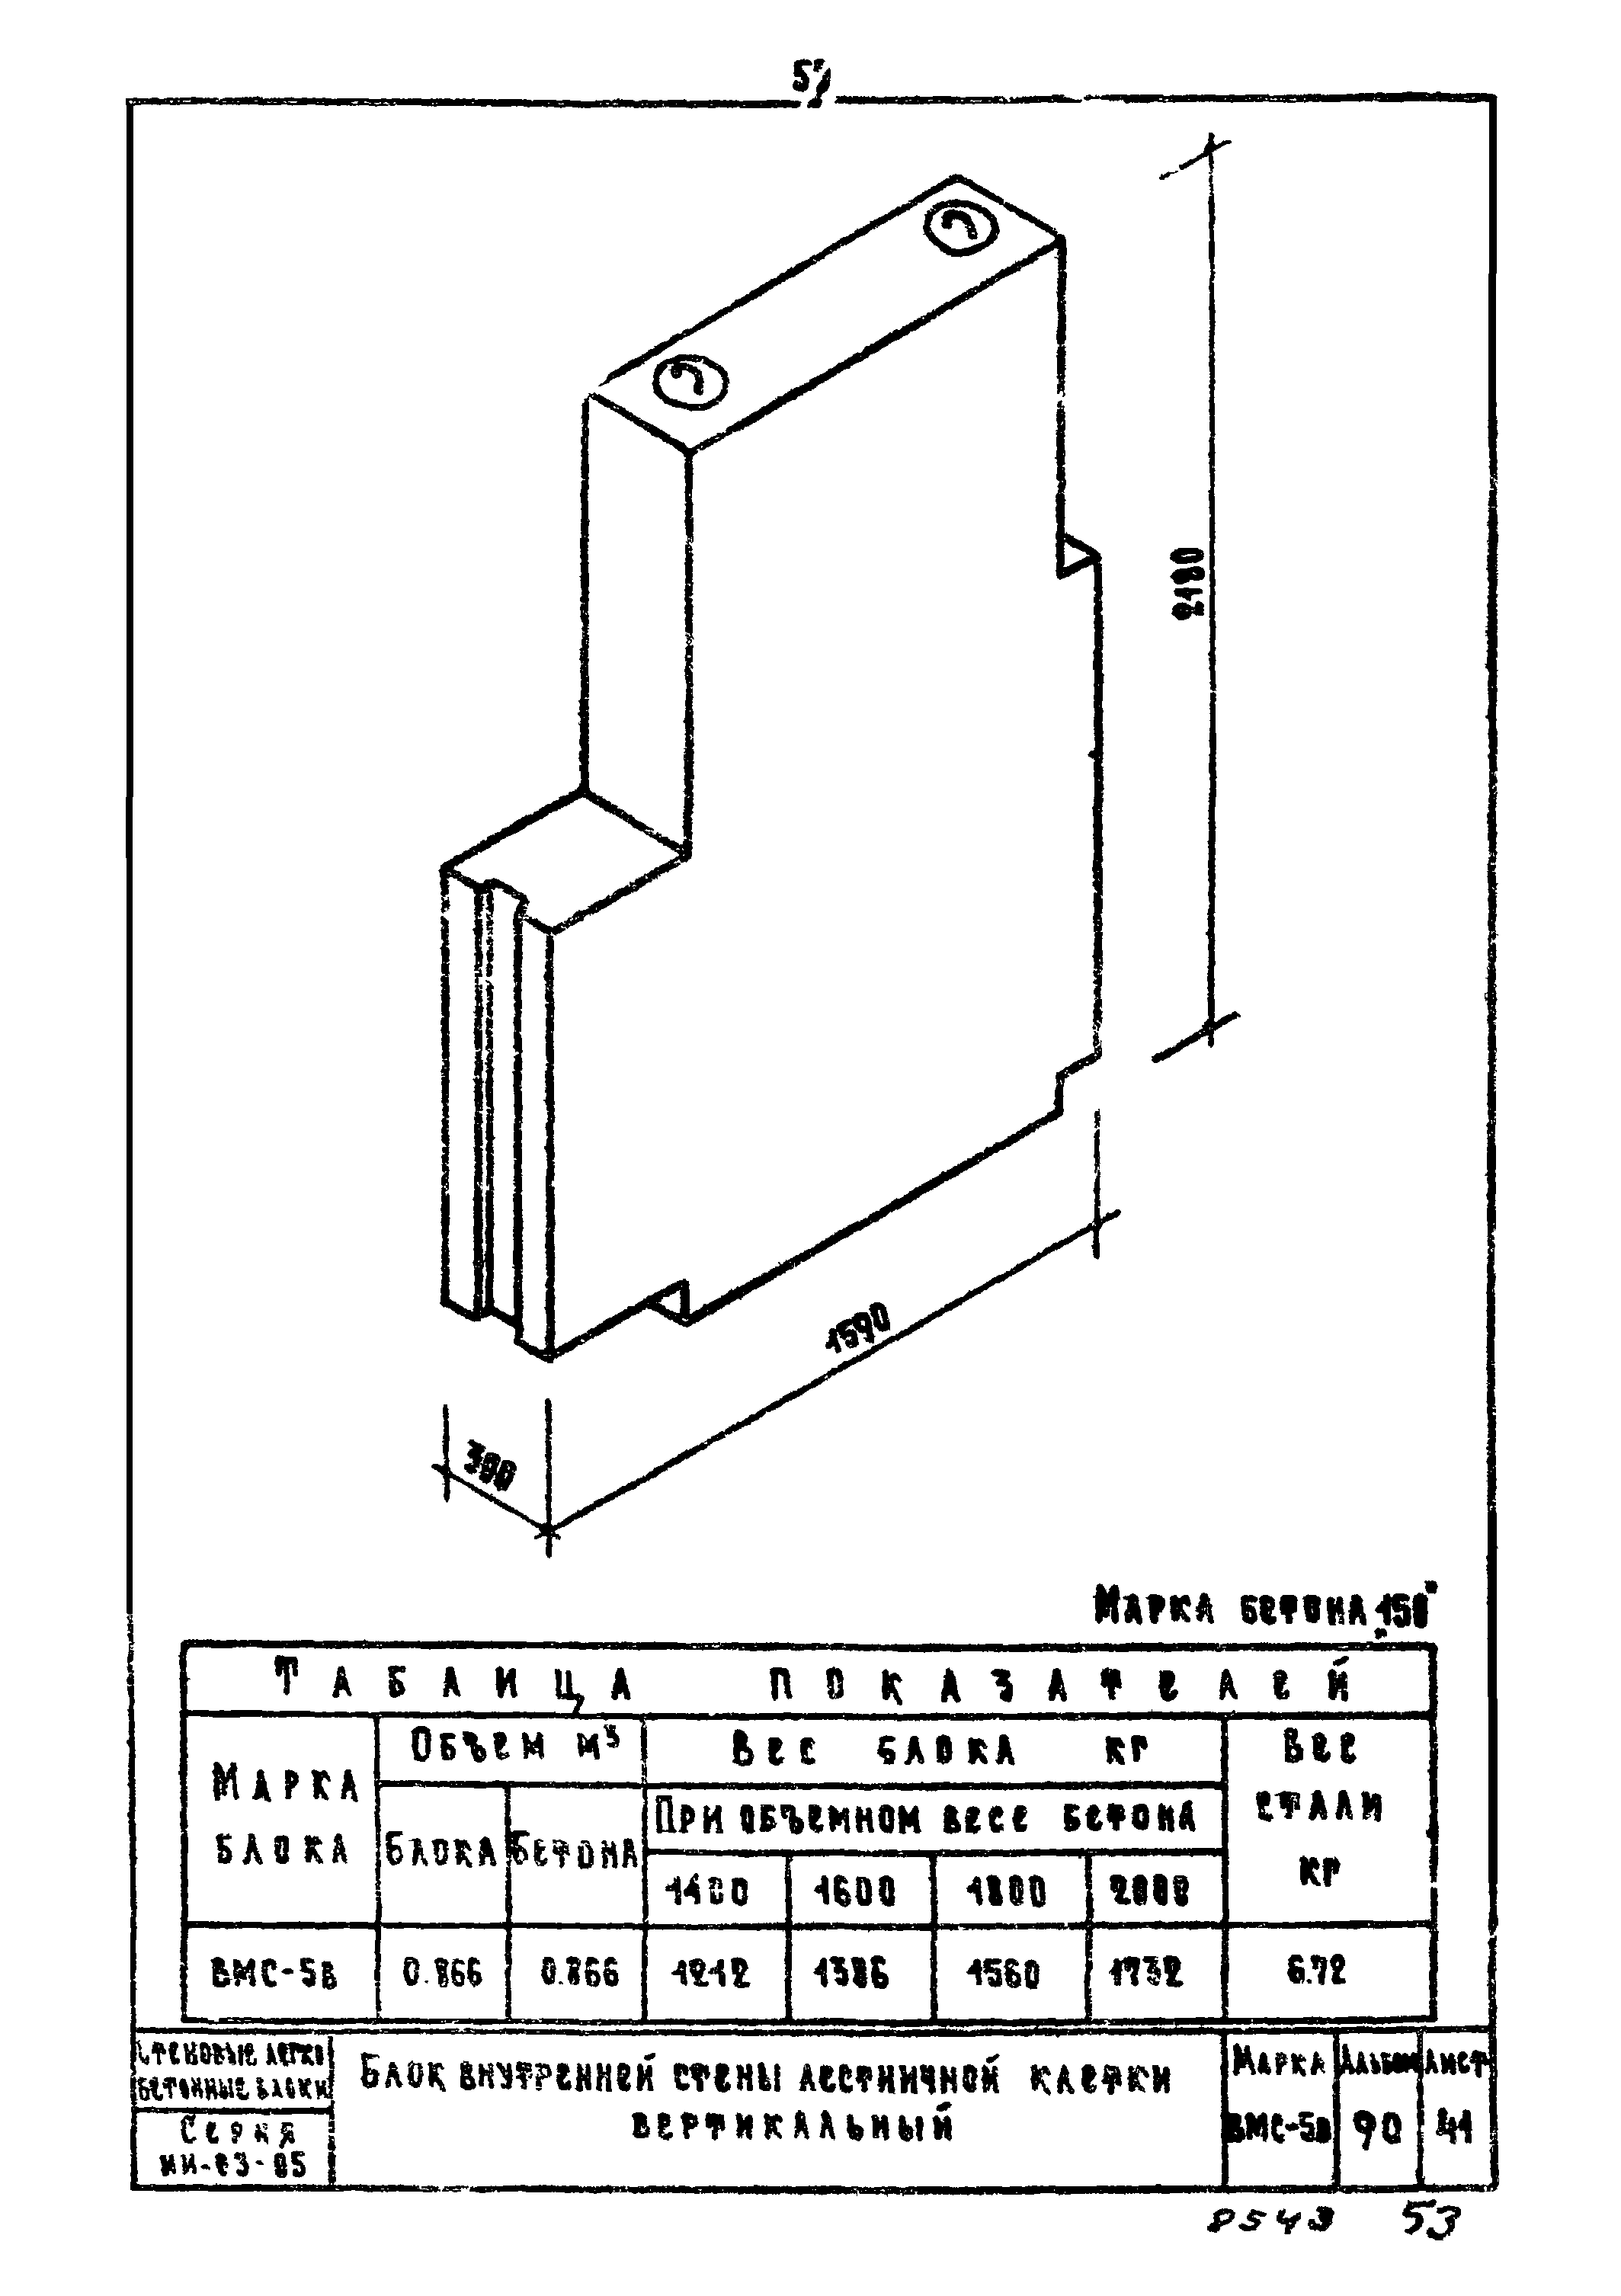 Пазогребневые блоки для перегородок: размеры и характеристики